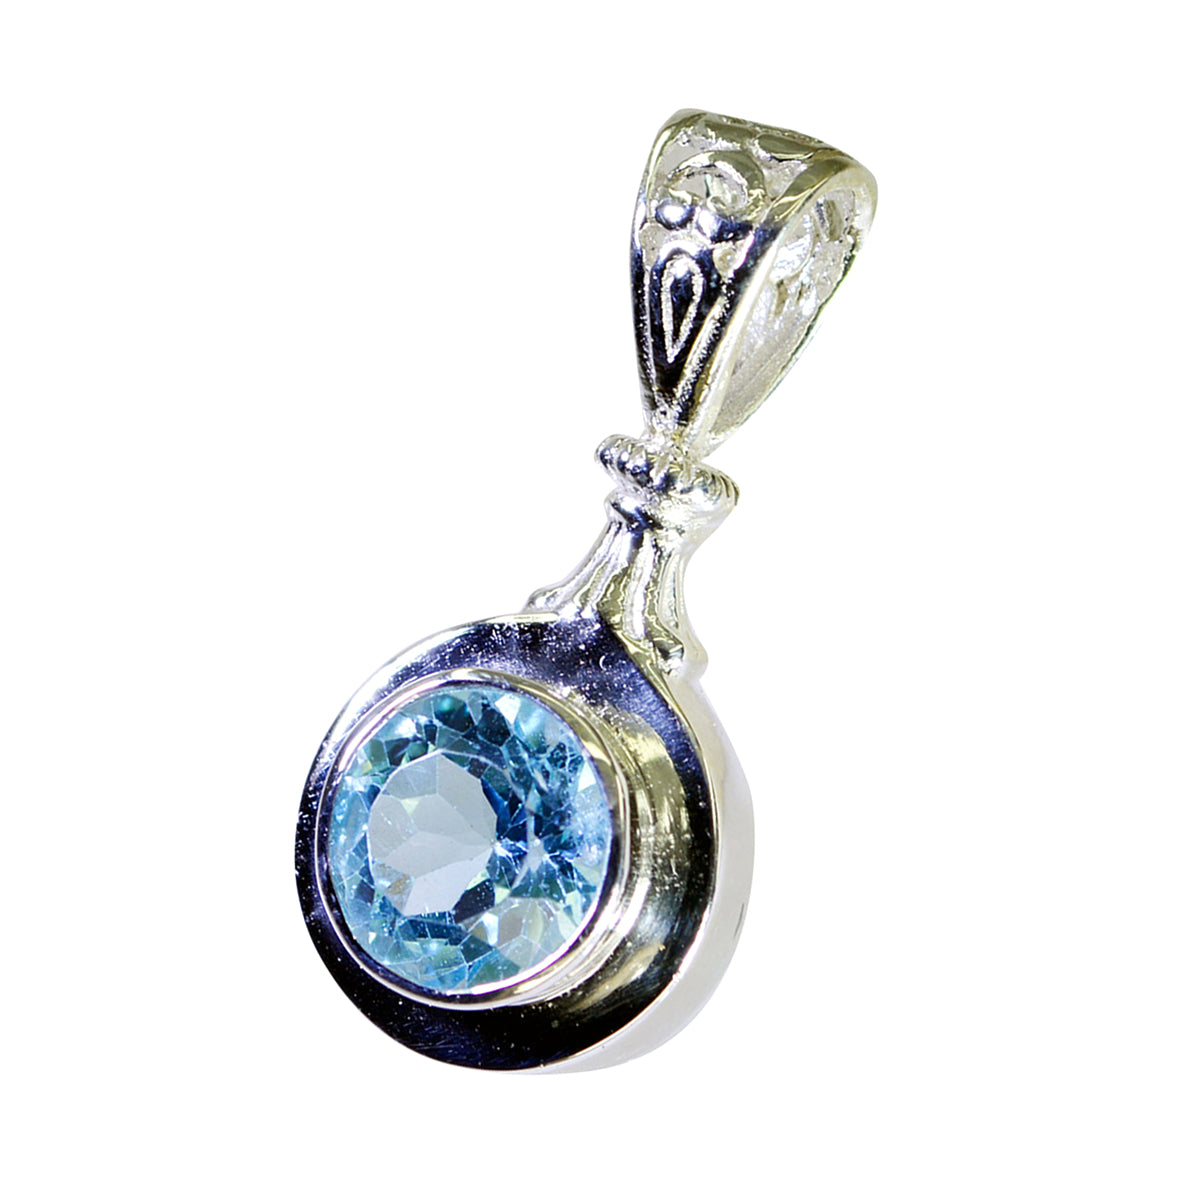 Riyo linda piedra preciosa redonda facetada azul topacio azul colgante de plata de ley regalo para mujer